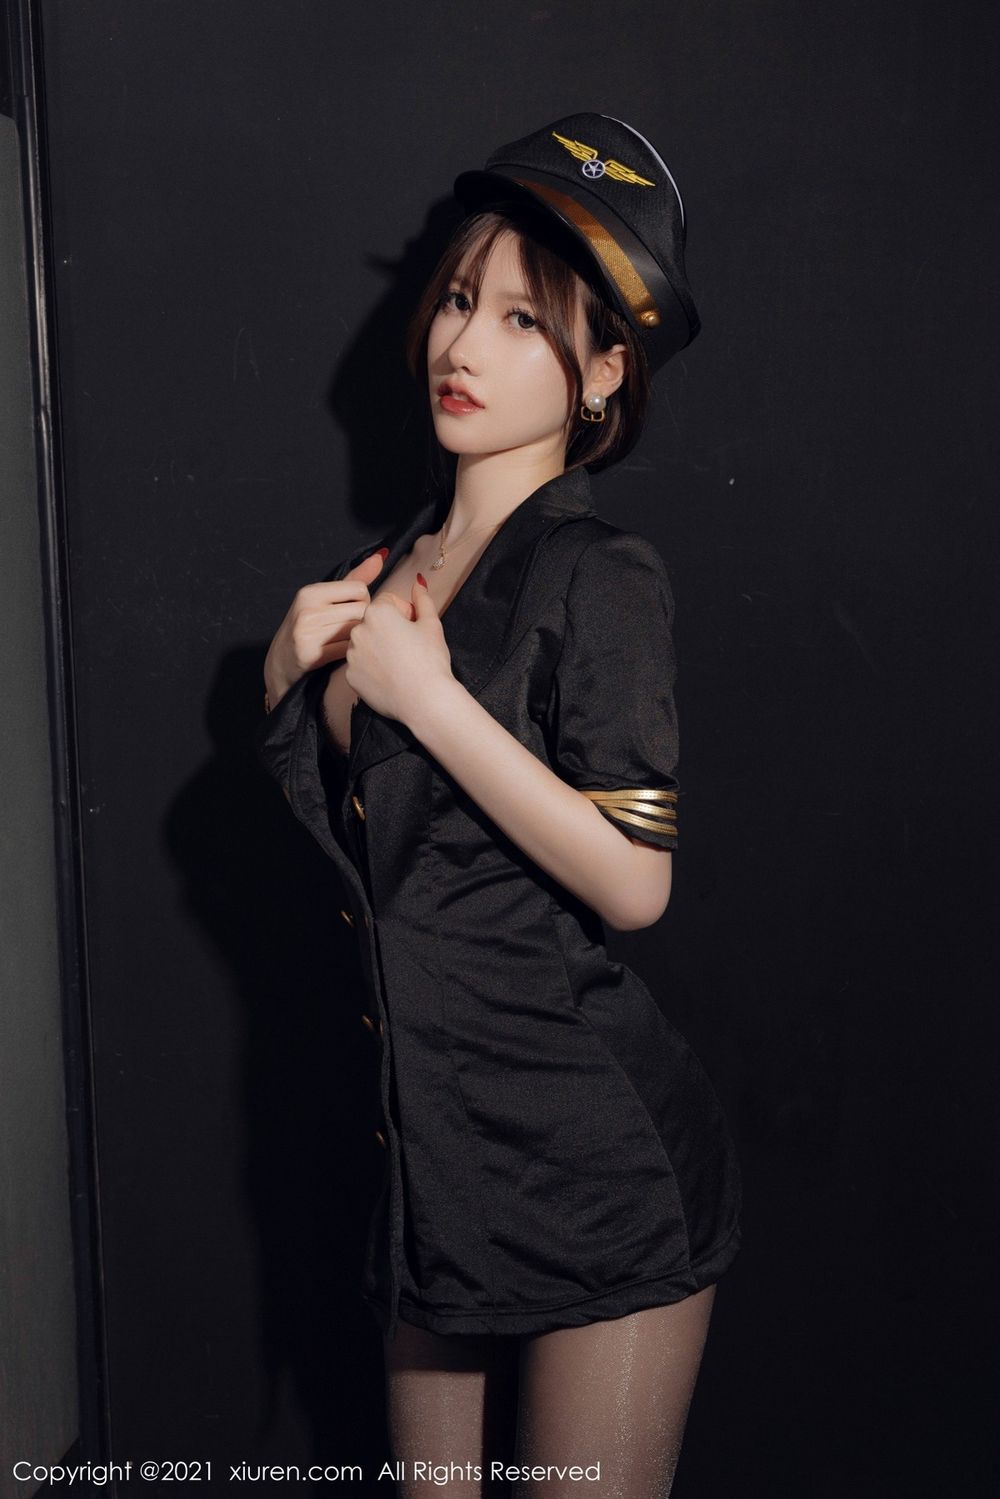 美女模特美桃酱黑色空军制服搭配黑丝系列性感写真